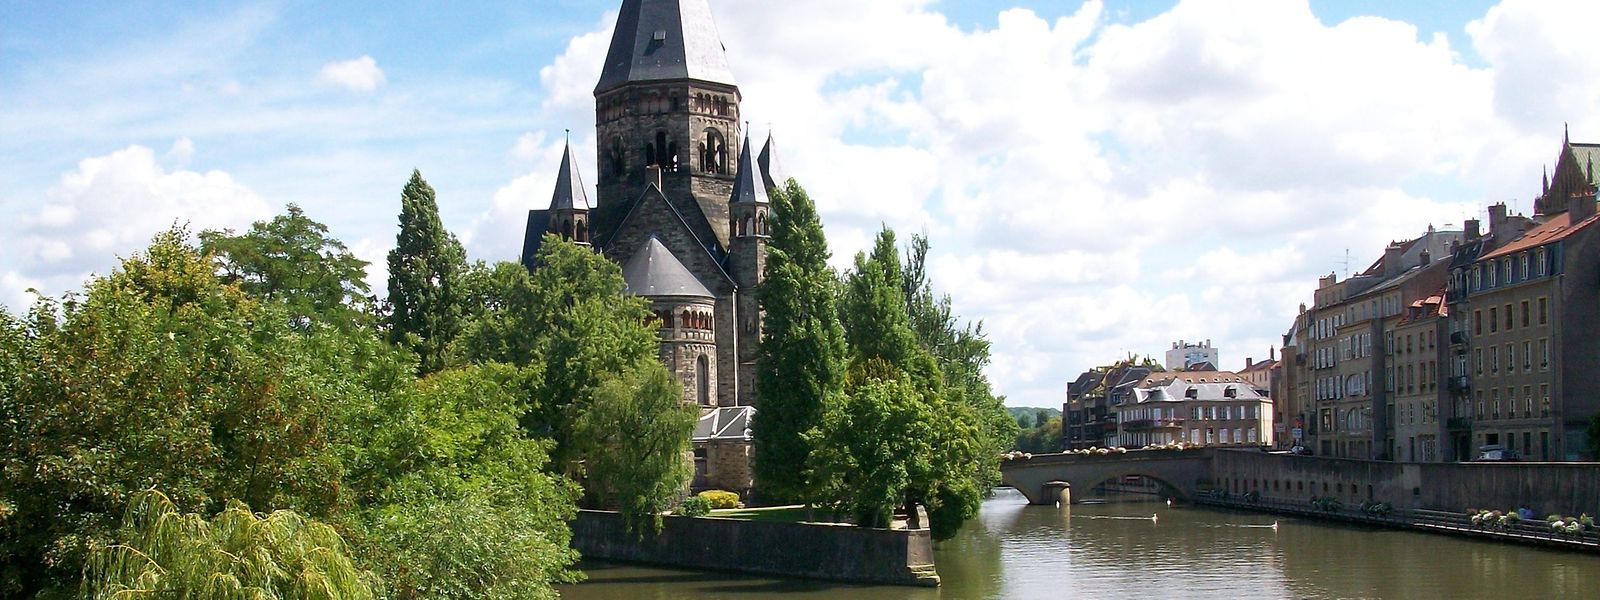 Le temple neuf de Metz, joyau architectural, est aussi un des symboles de l'annexion de l'Alsace-Moselle par l'empire allemand entre 1871 et 1918.